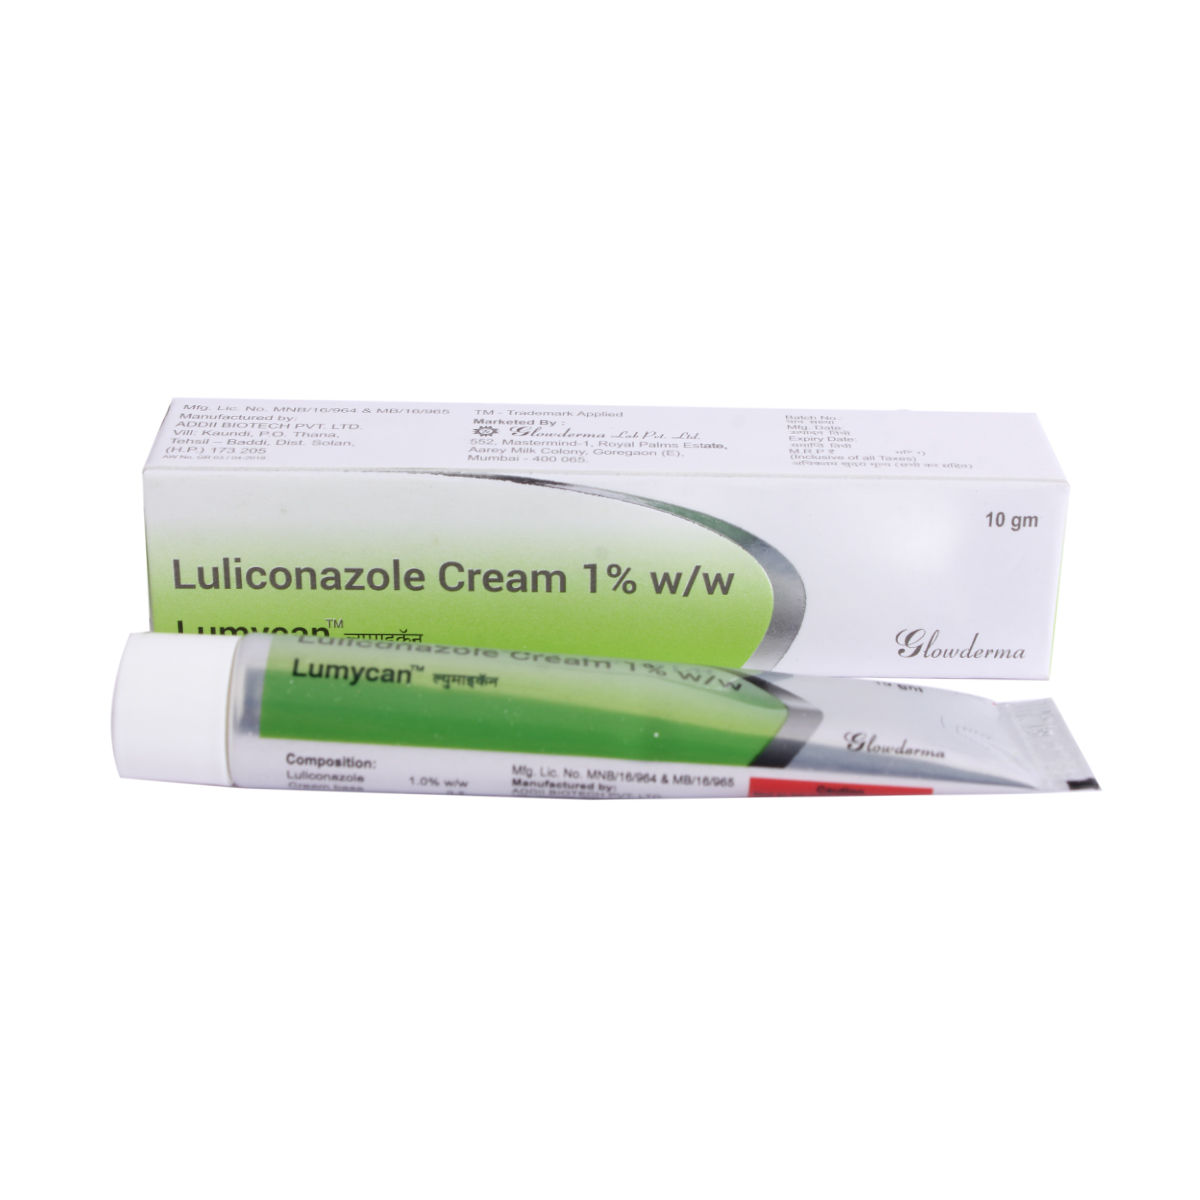 Lumycan Cream 10 gm, Pack of 1 CREAM